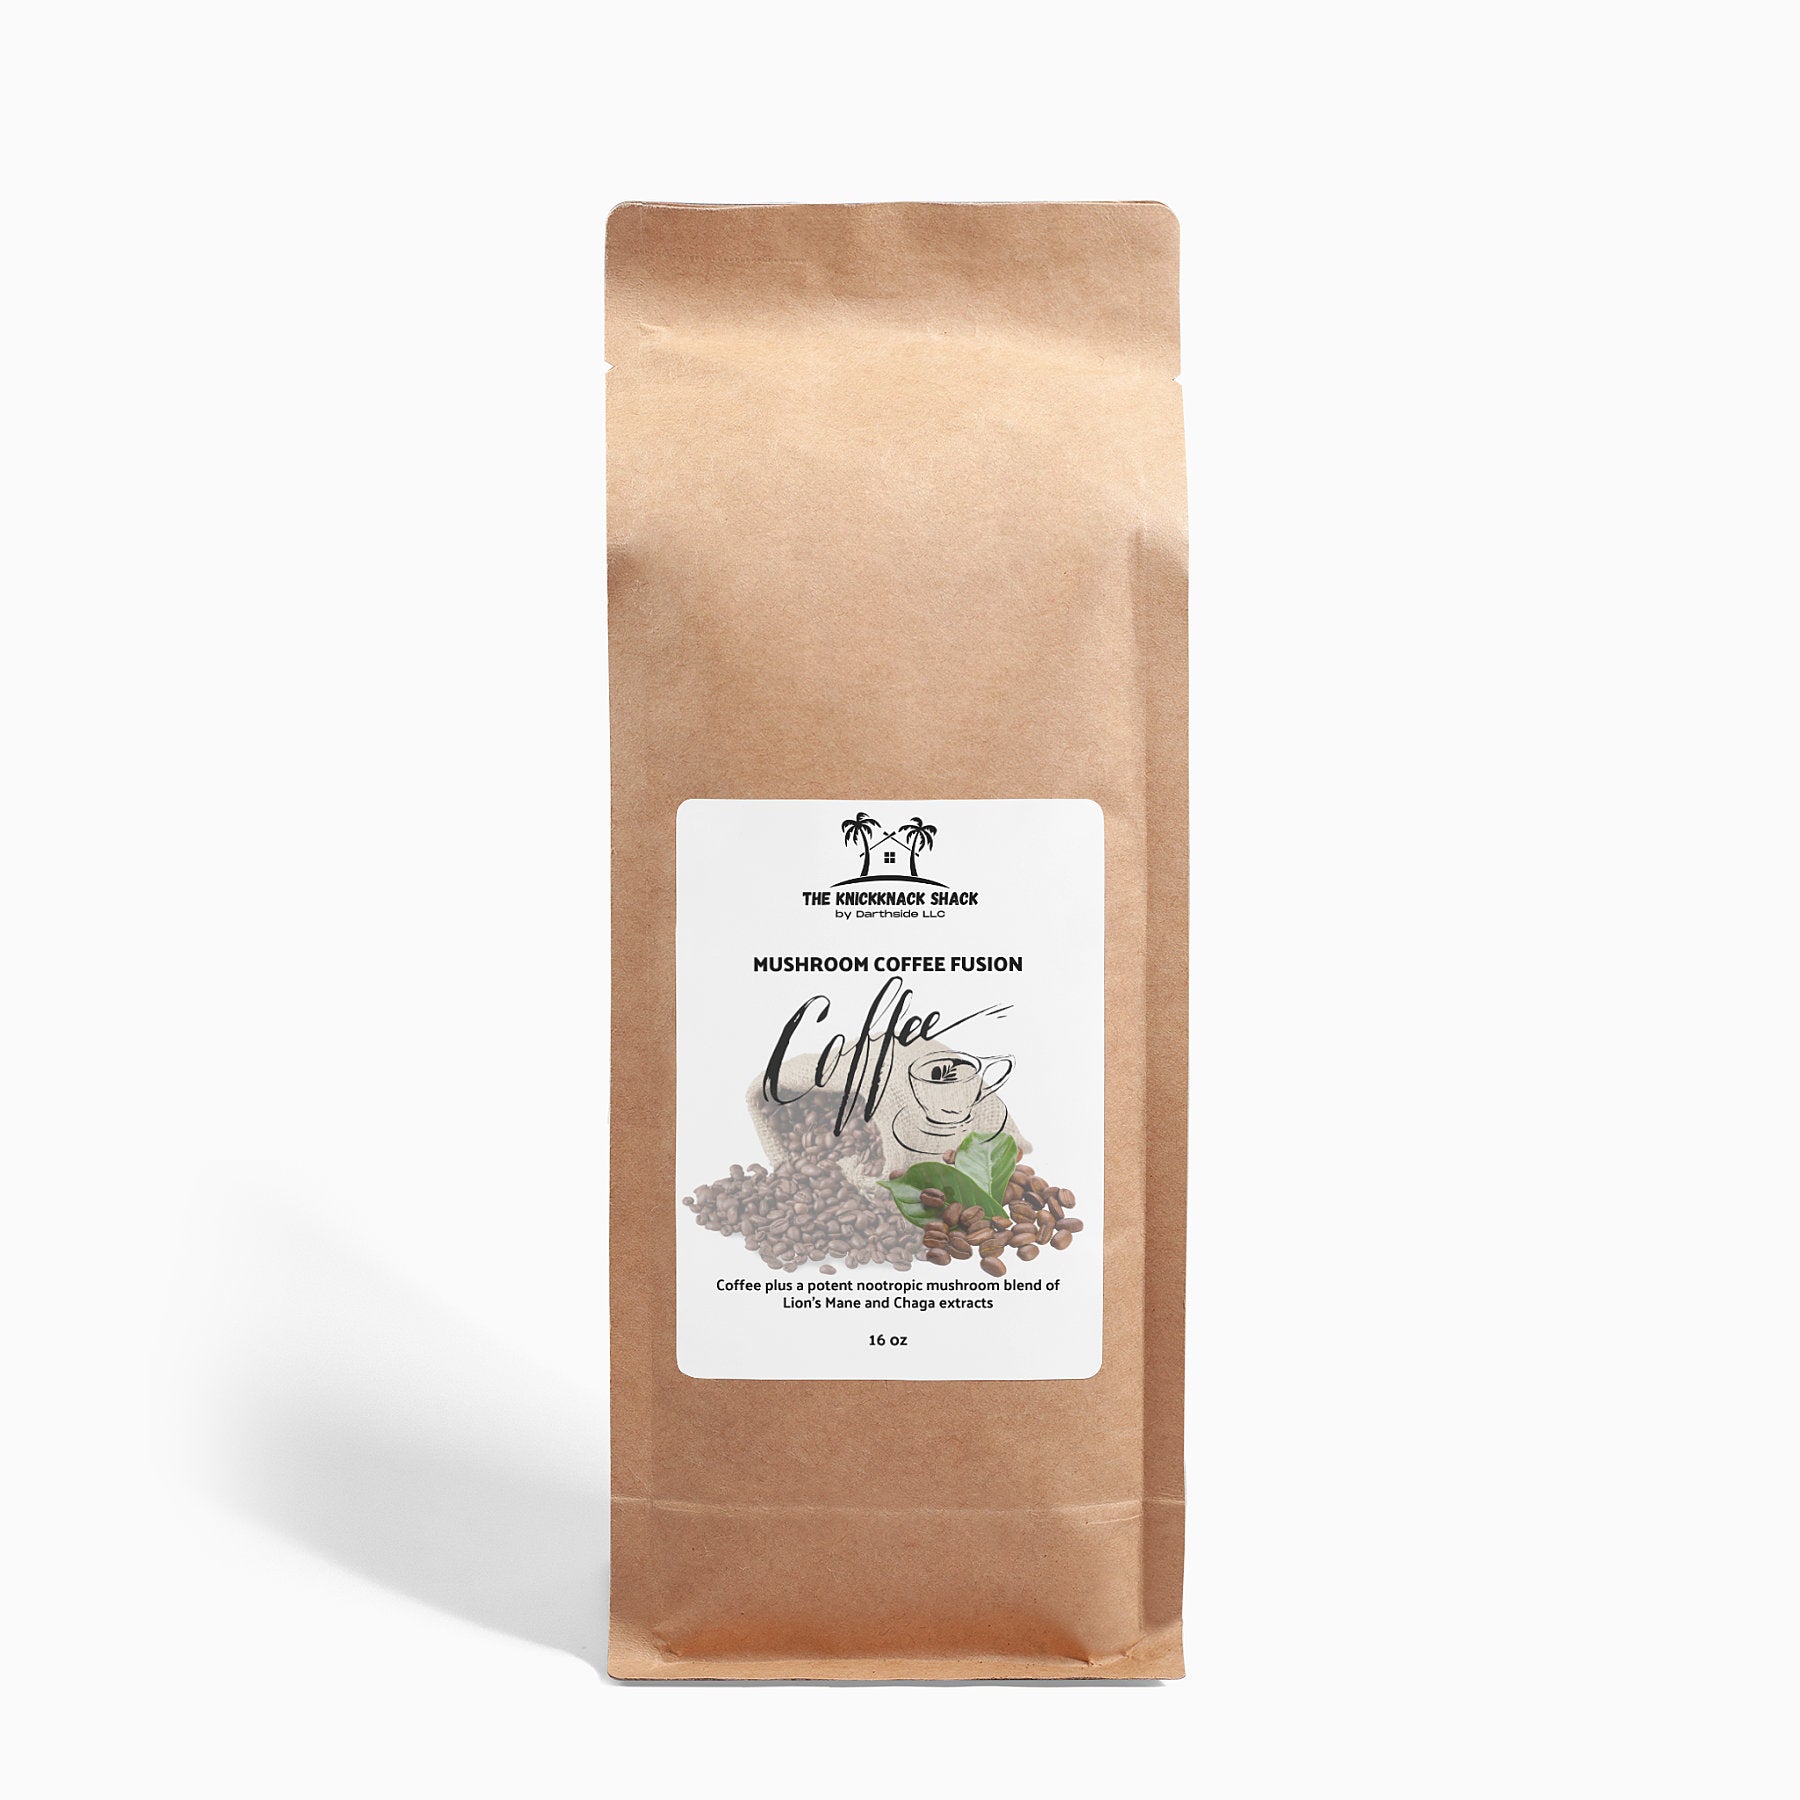 Fusion de café aux champignons - Crinière de lion et chaga 16oz